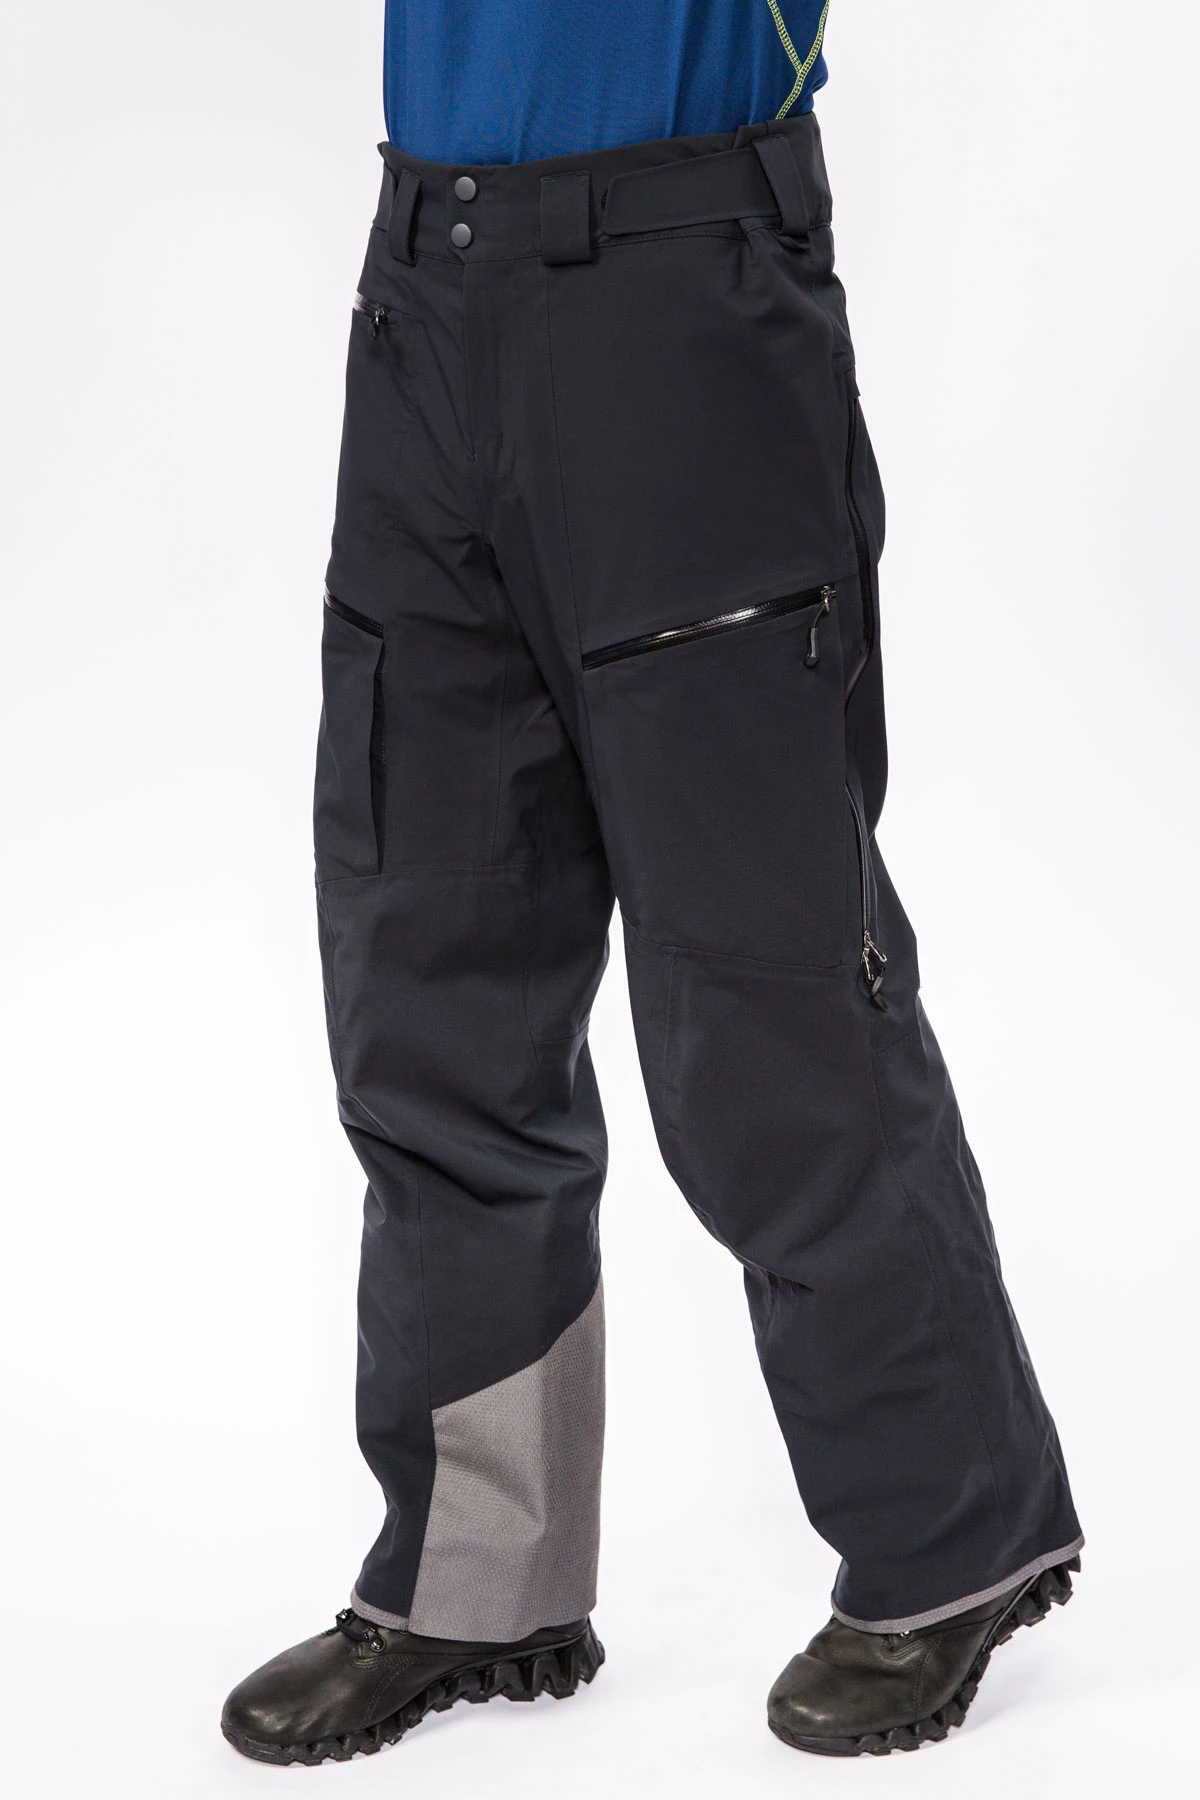 Мембранные брюки Dermizax 3L мужские 17-20915 10 изображение 2